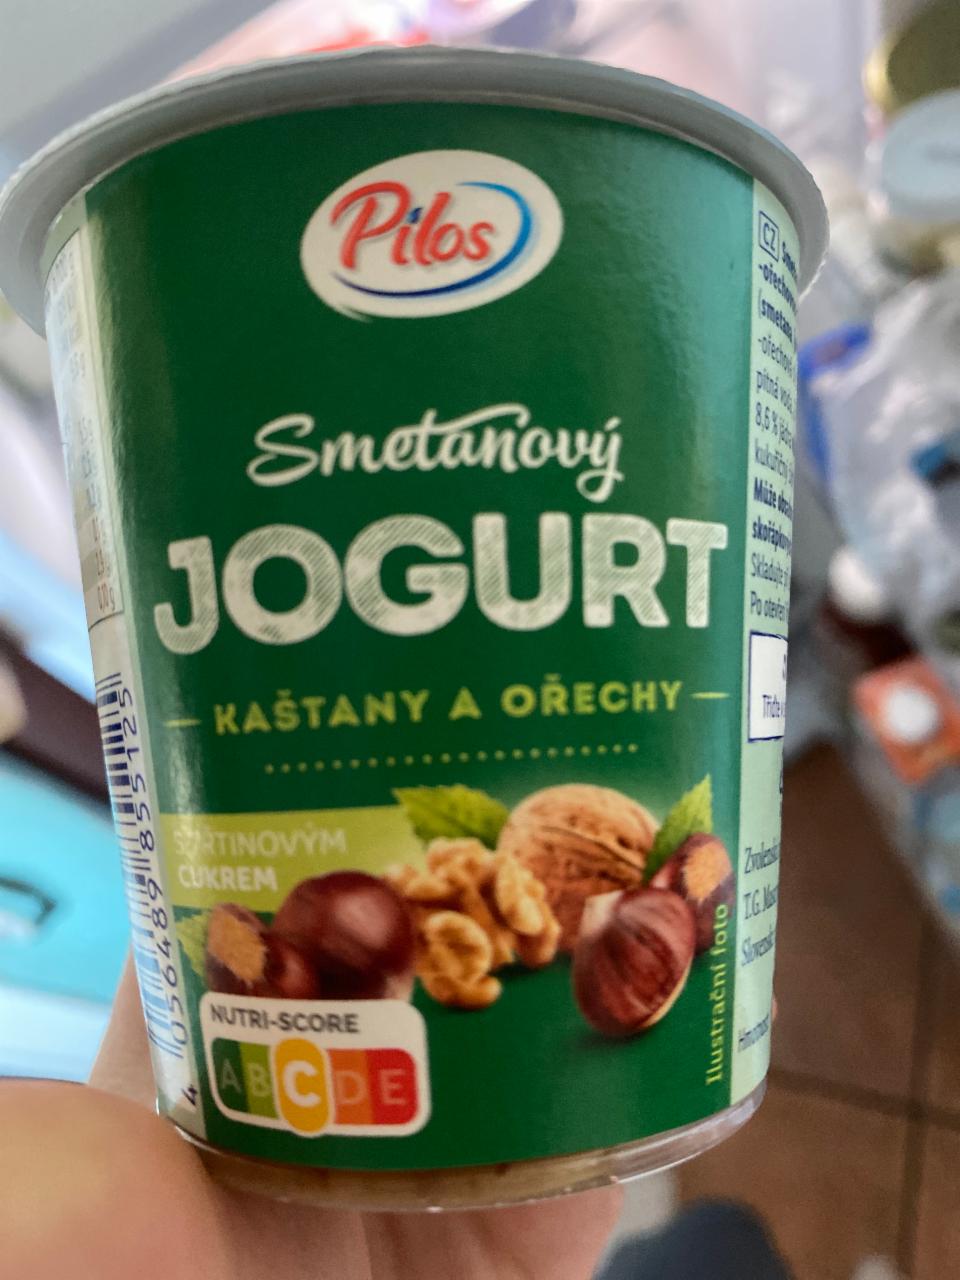 Fotografie - Smetanový jogurt kaštany a ořechy Pilos